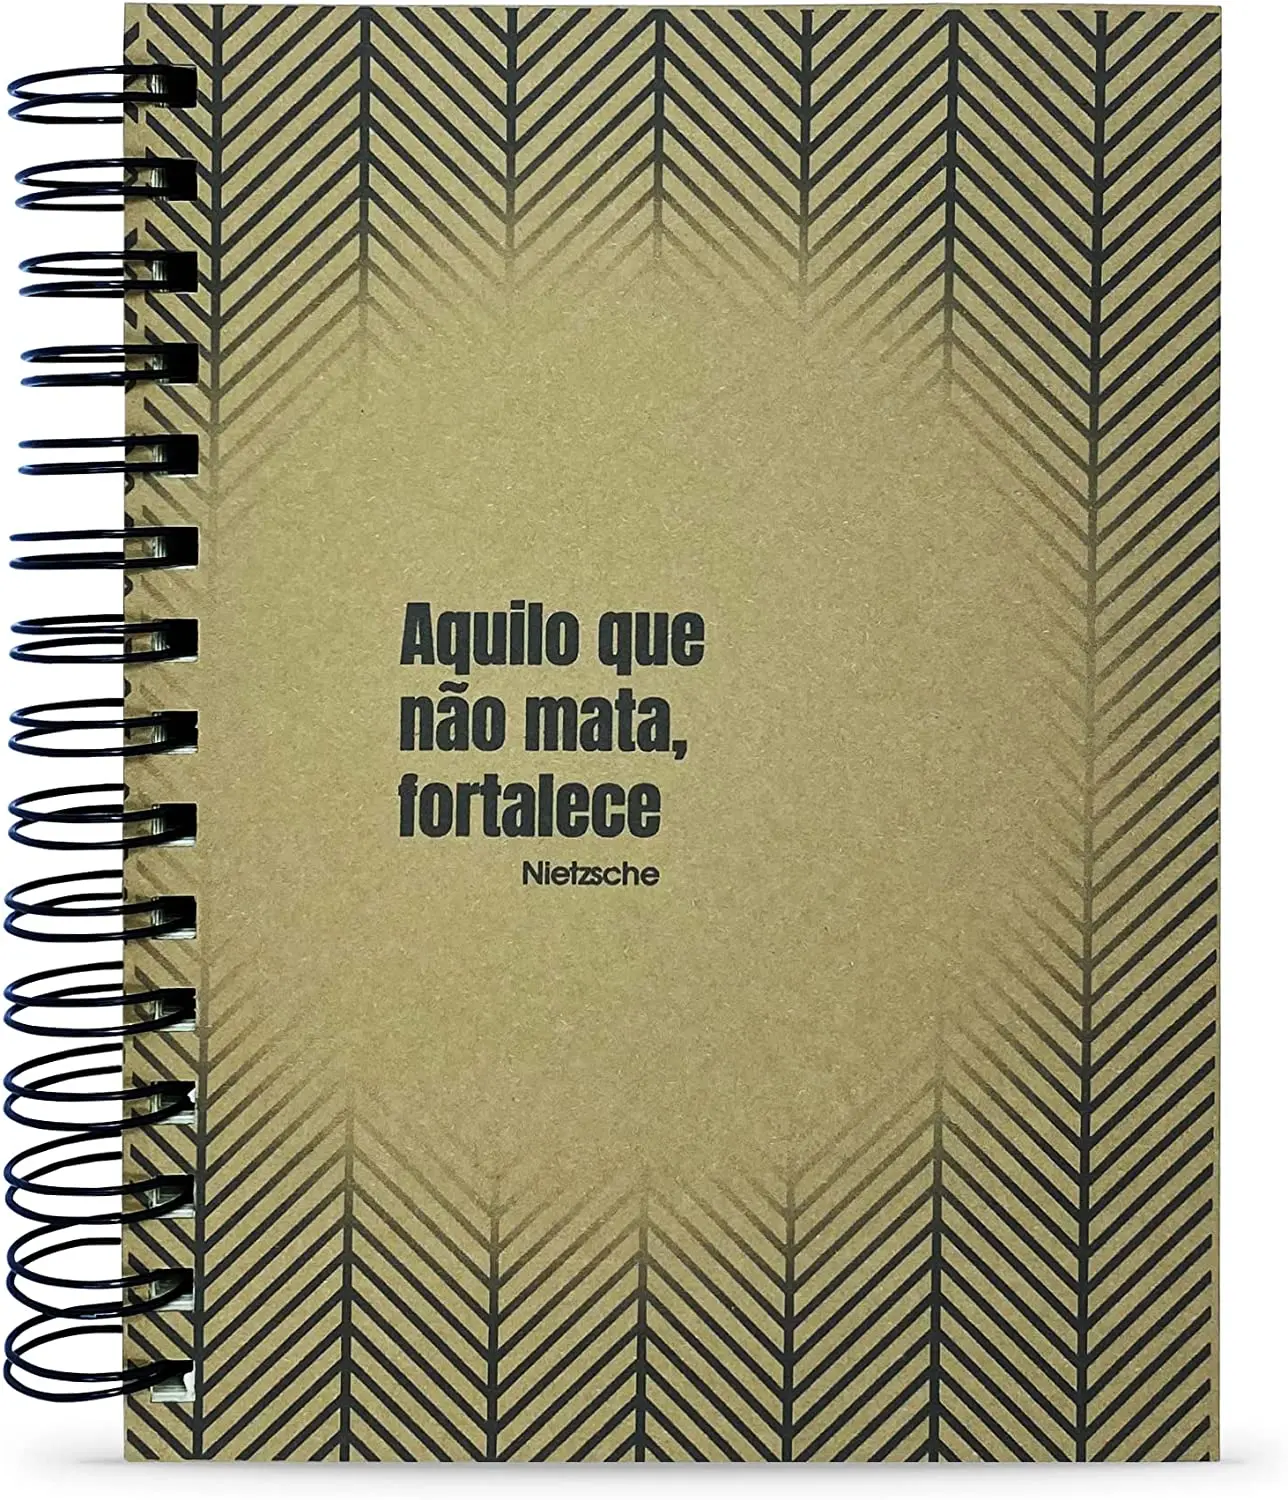 

Caderno Nietzsche "O Que Não Mata" 125 Fls. A5 Capa Dura notebooks com frete grátis